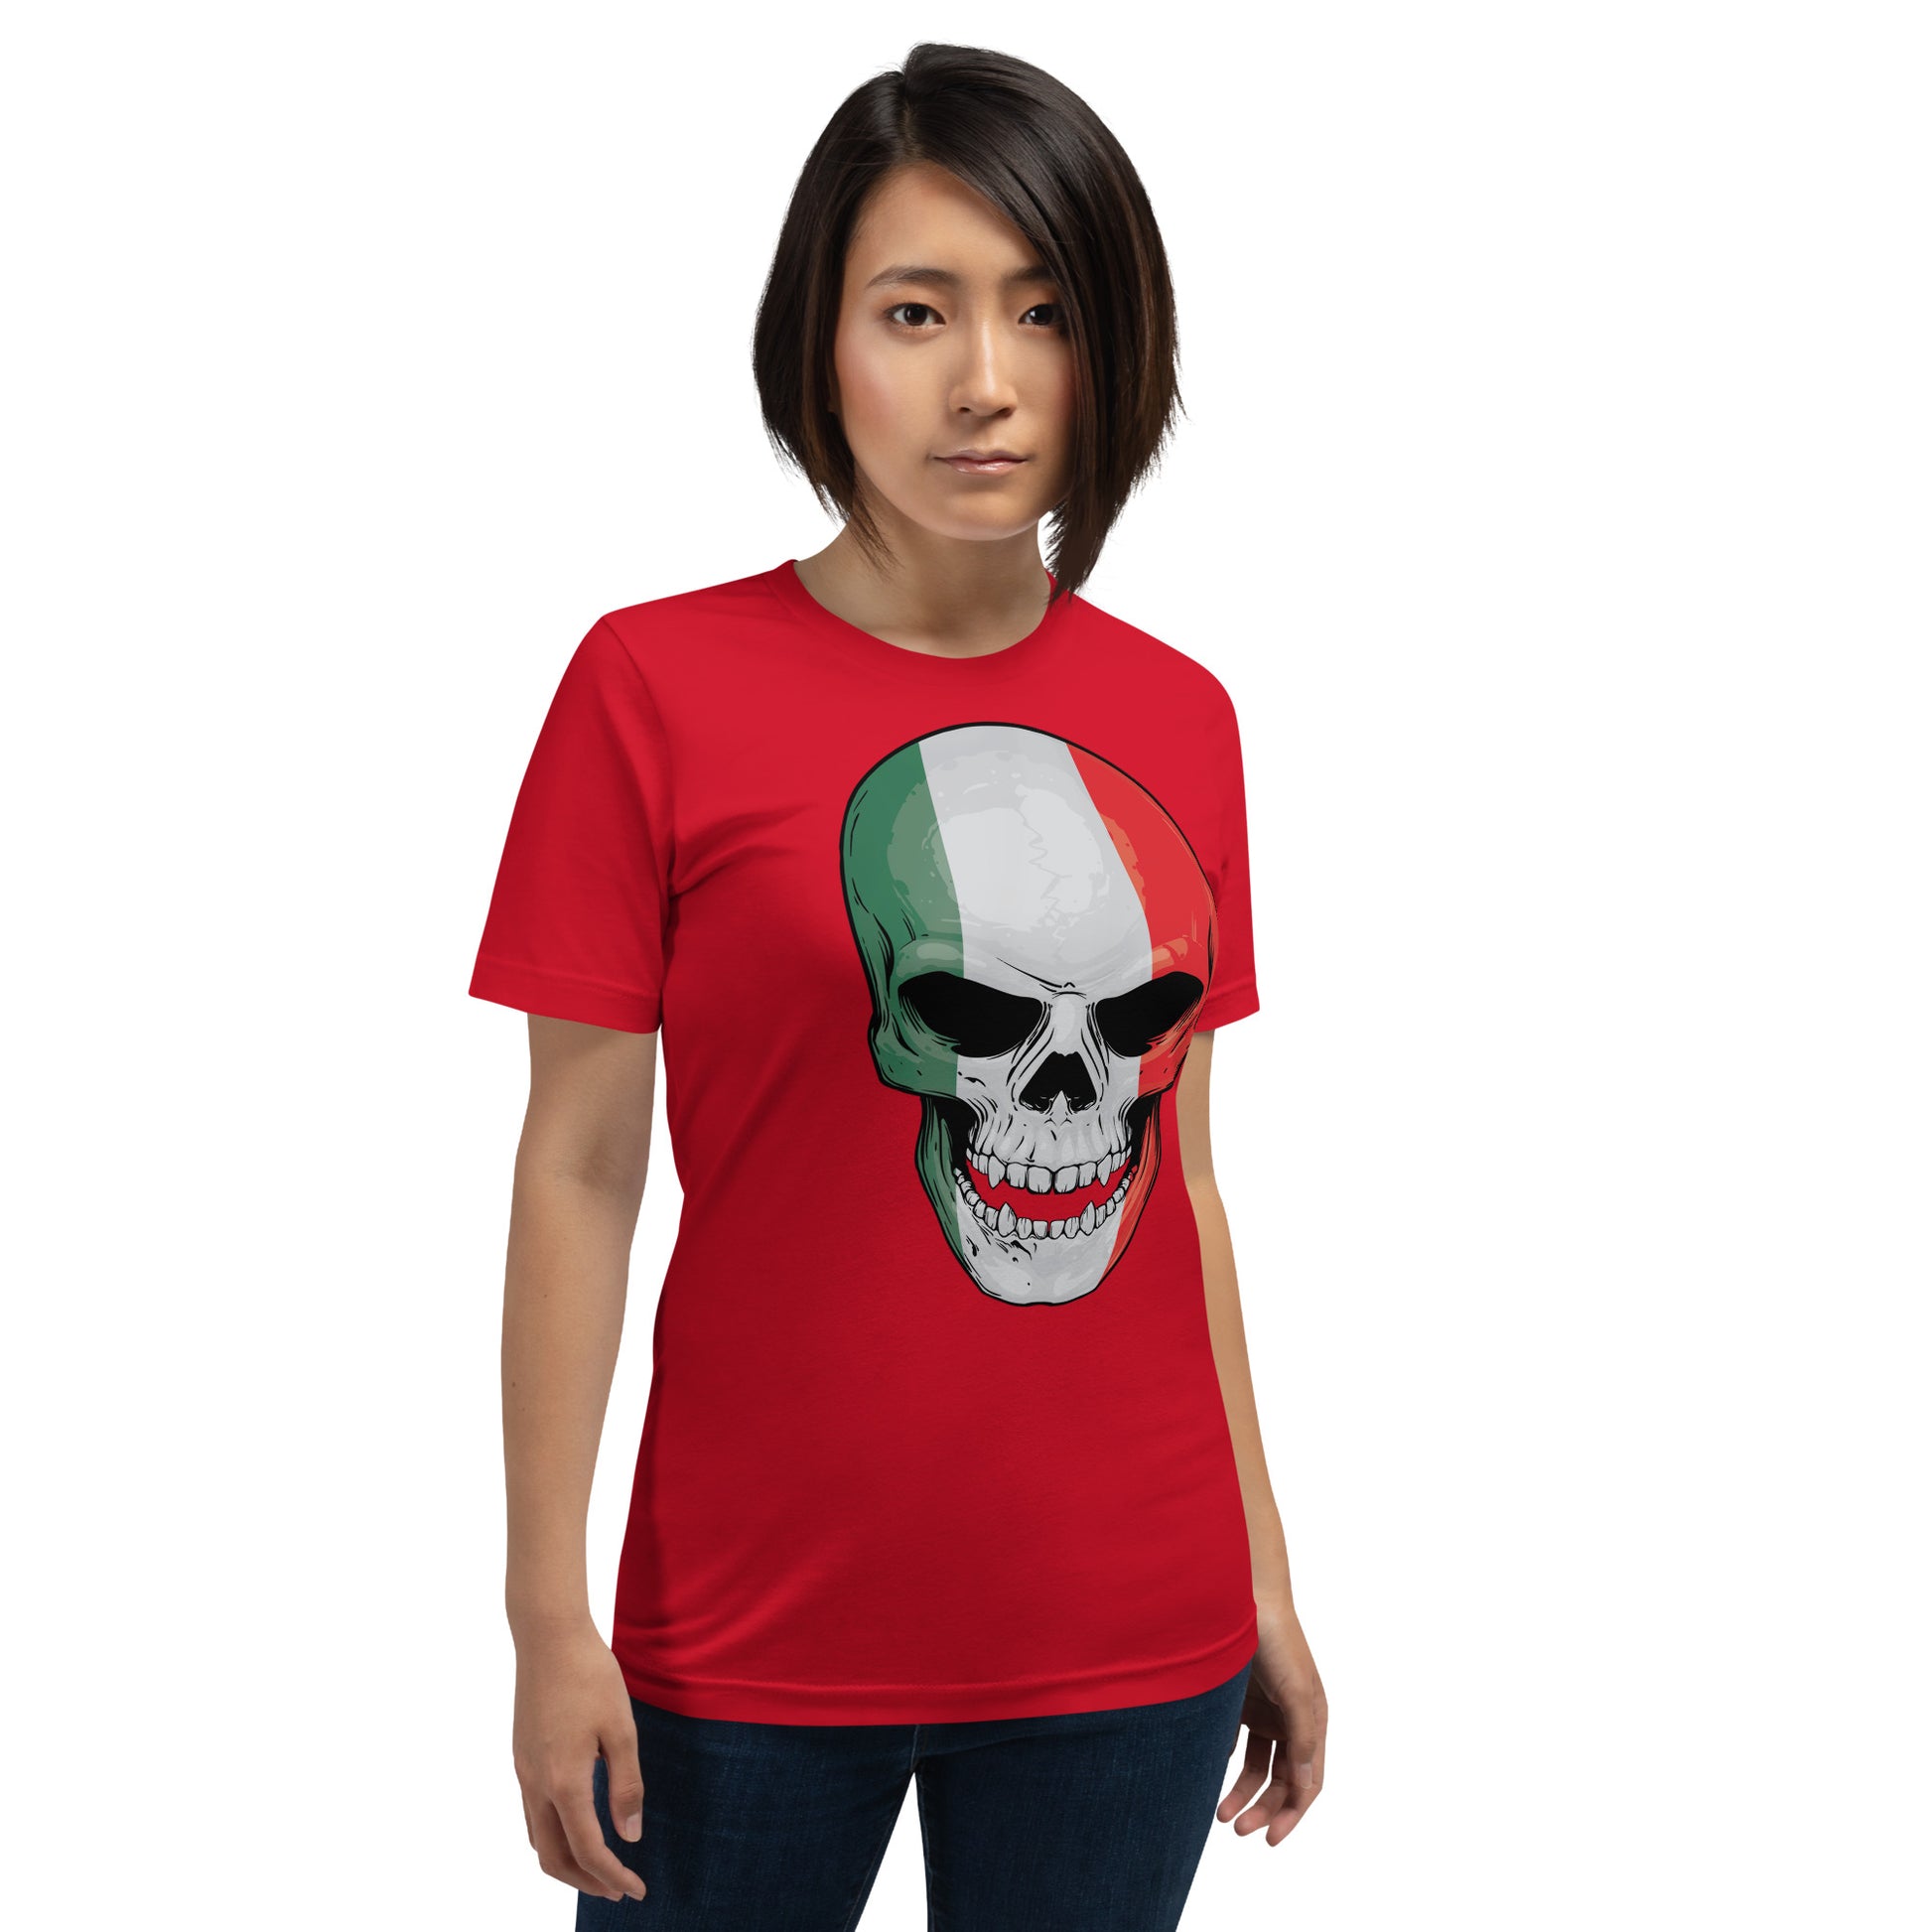 Italian T-shirt with Italy Skull / Patriotic Gift Idea